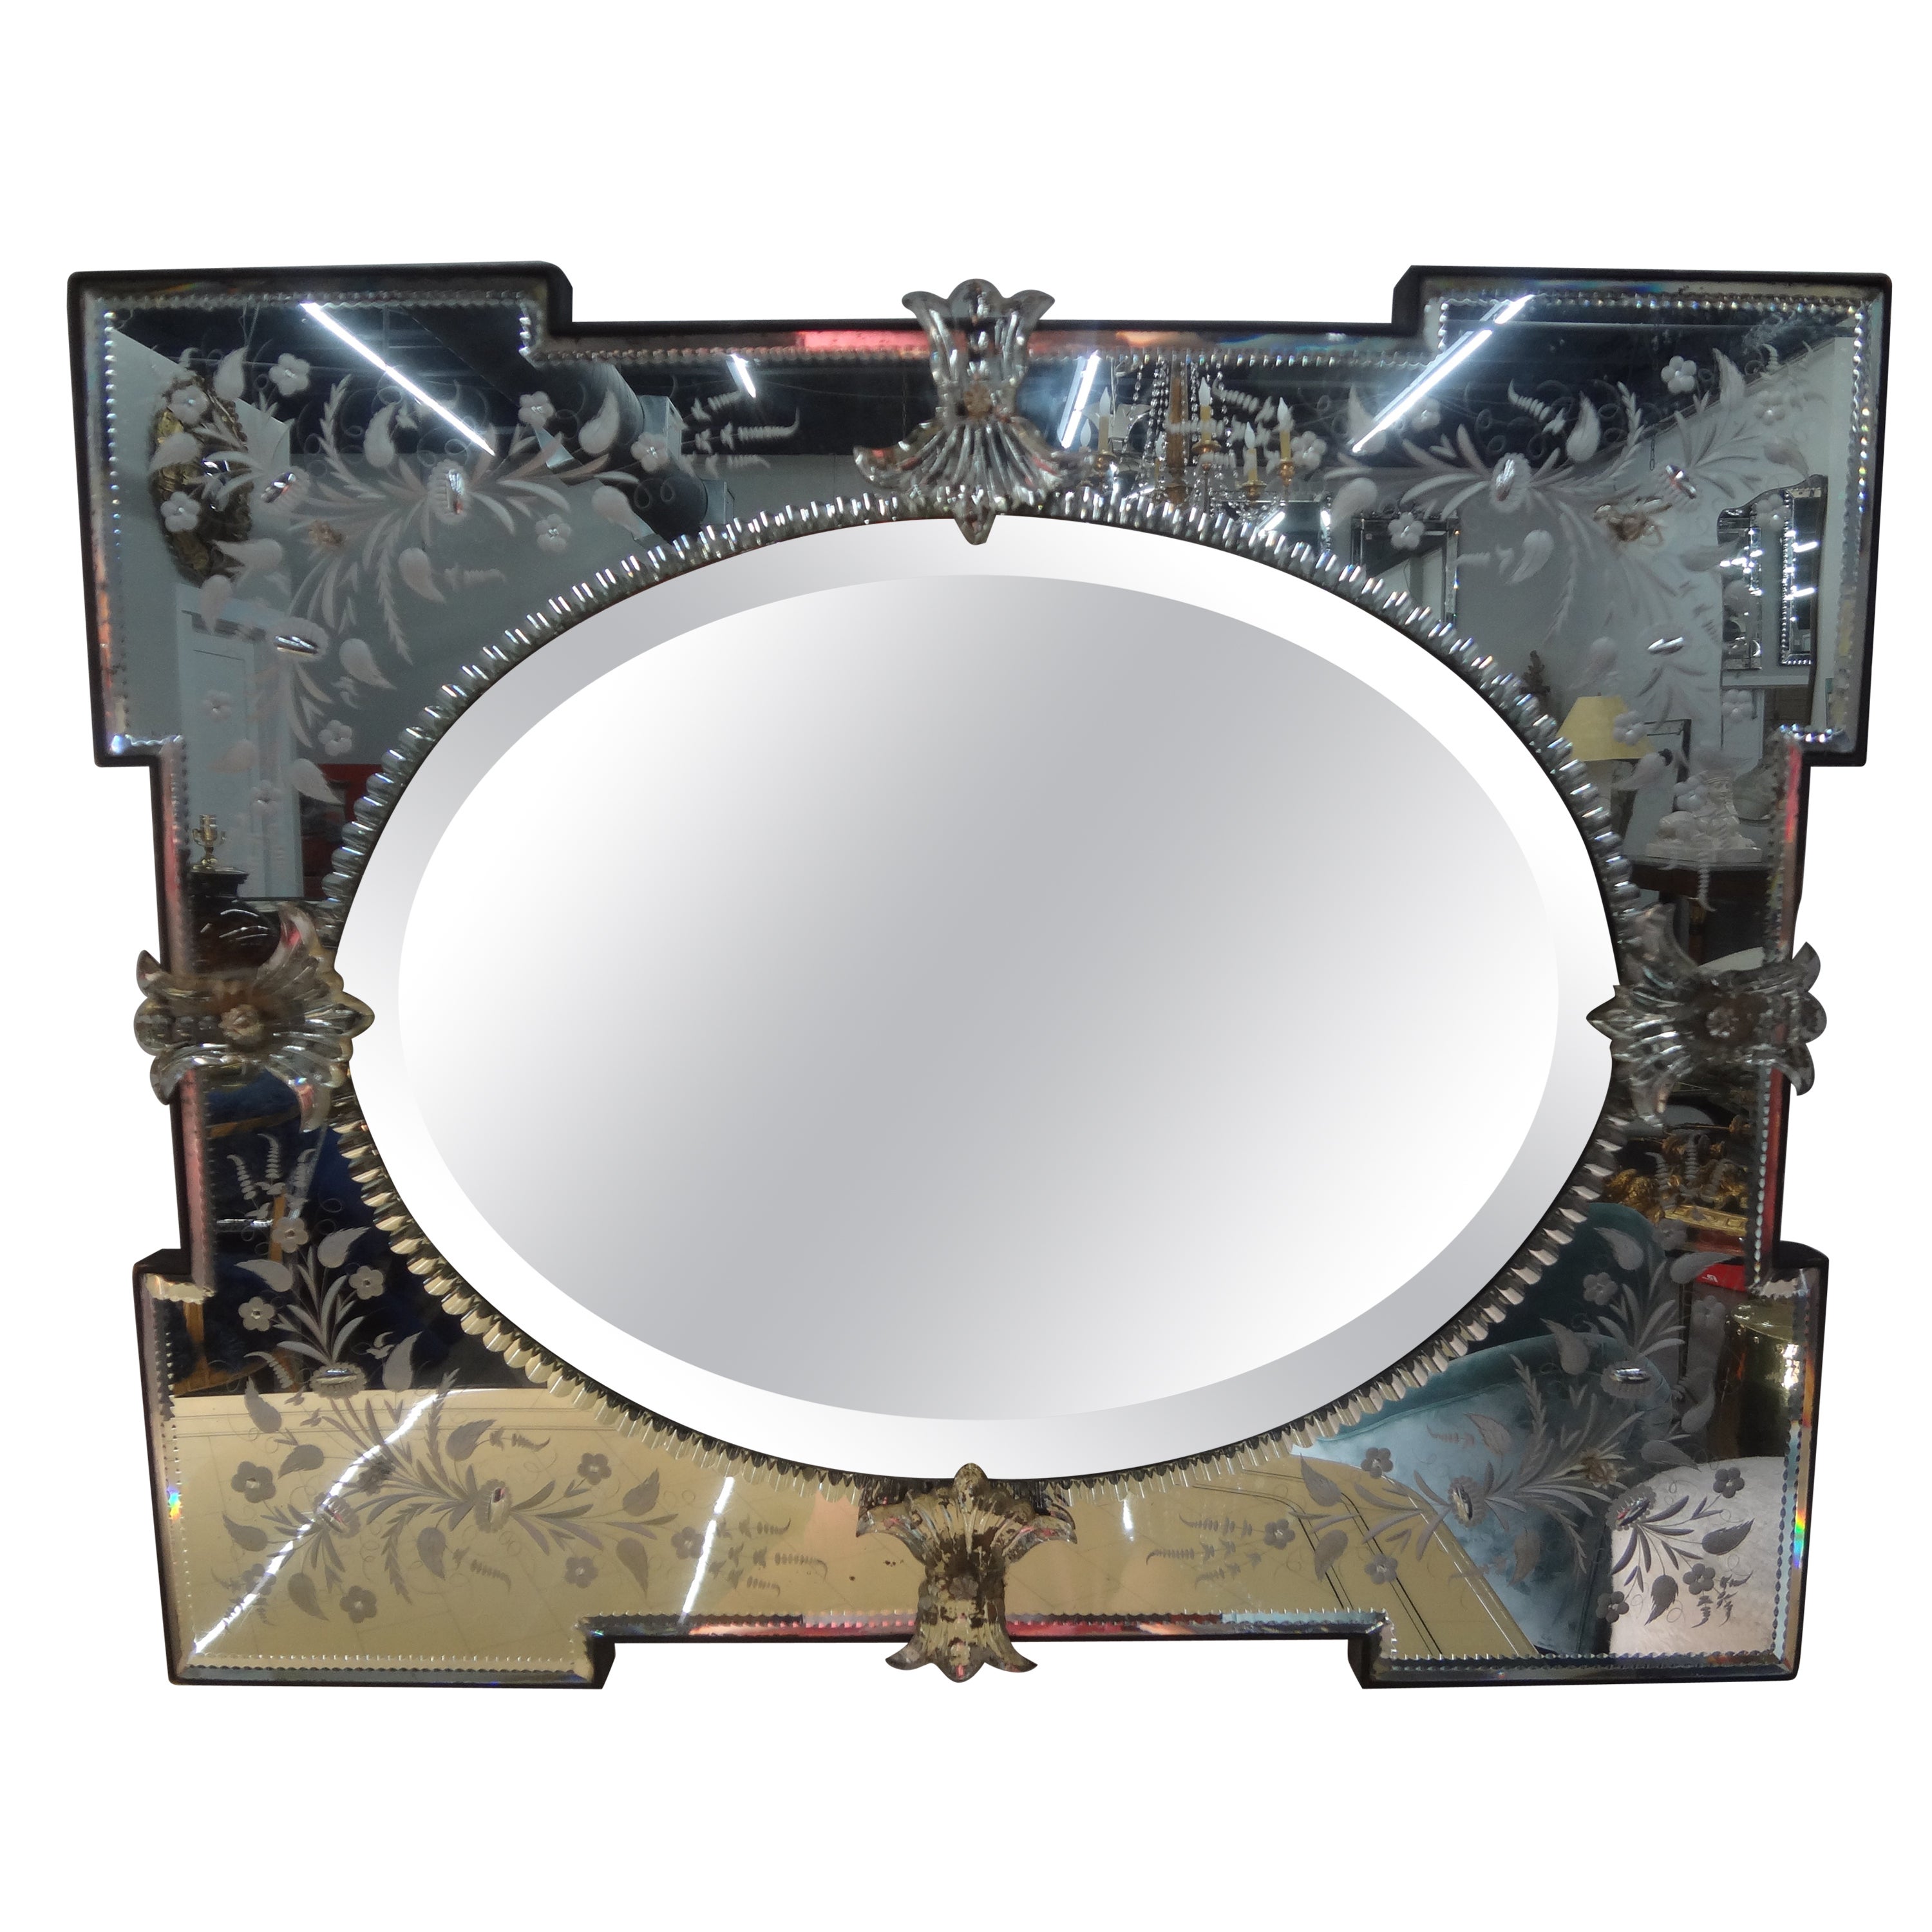 Geätzter und abgeschrägter venezianischer Spiegel.
Interessanter, ungewöhnlich geformter, geätzter venezianischer Spiegel mit einem abgeschrägten ovalen Zentrum. Dieser ungewöhnliche venezianische Spiegel aus den 1940er Jahren kann je nach Bedarf